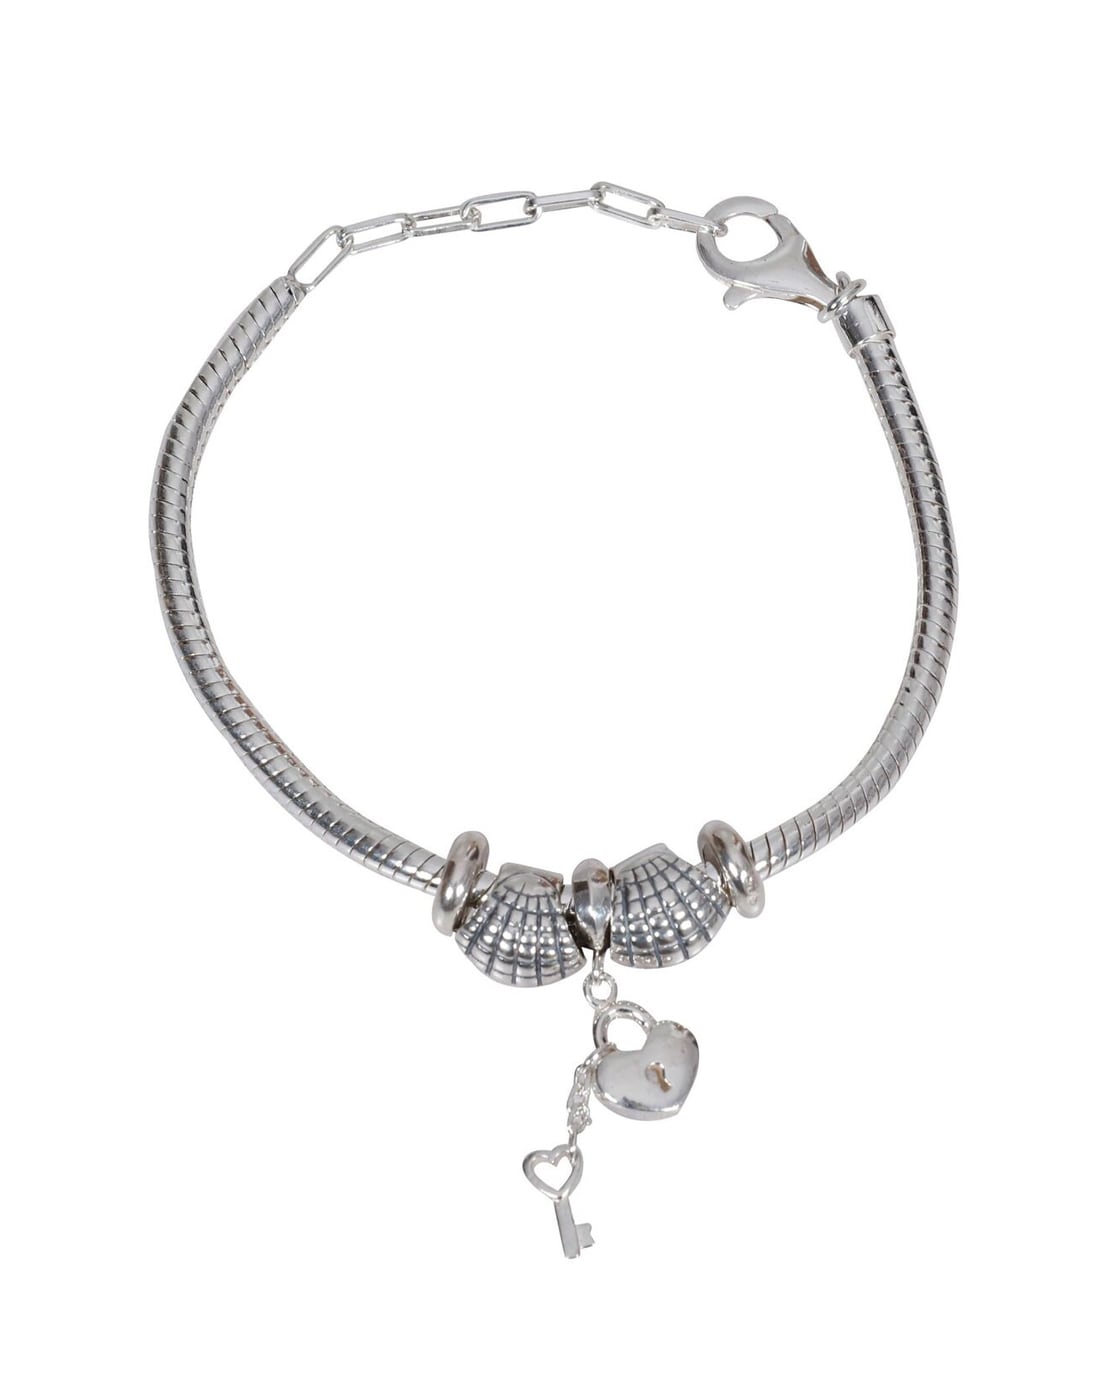 Buy Silver Bracelets & Bangles for Women by Silverwala Online | Ajio.com